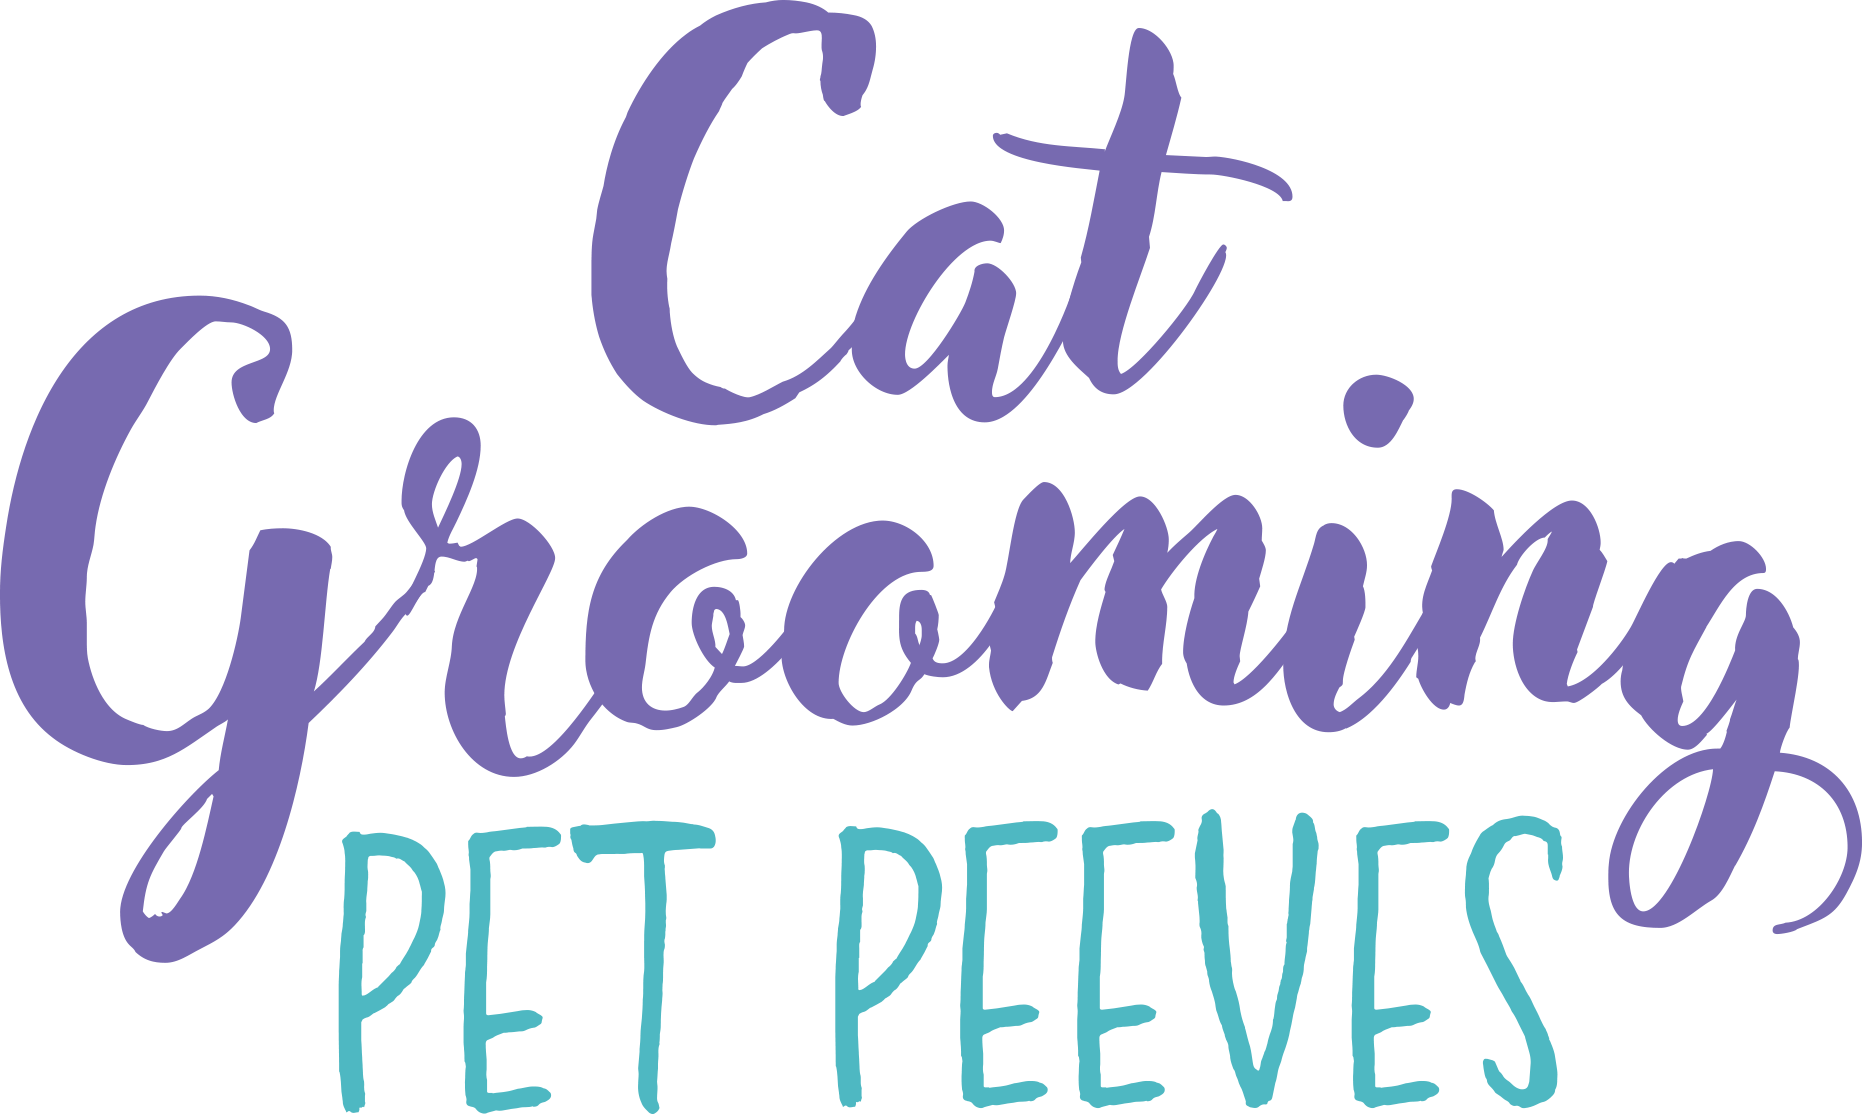 "Cat Grooming Pet Peeves"